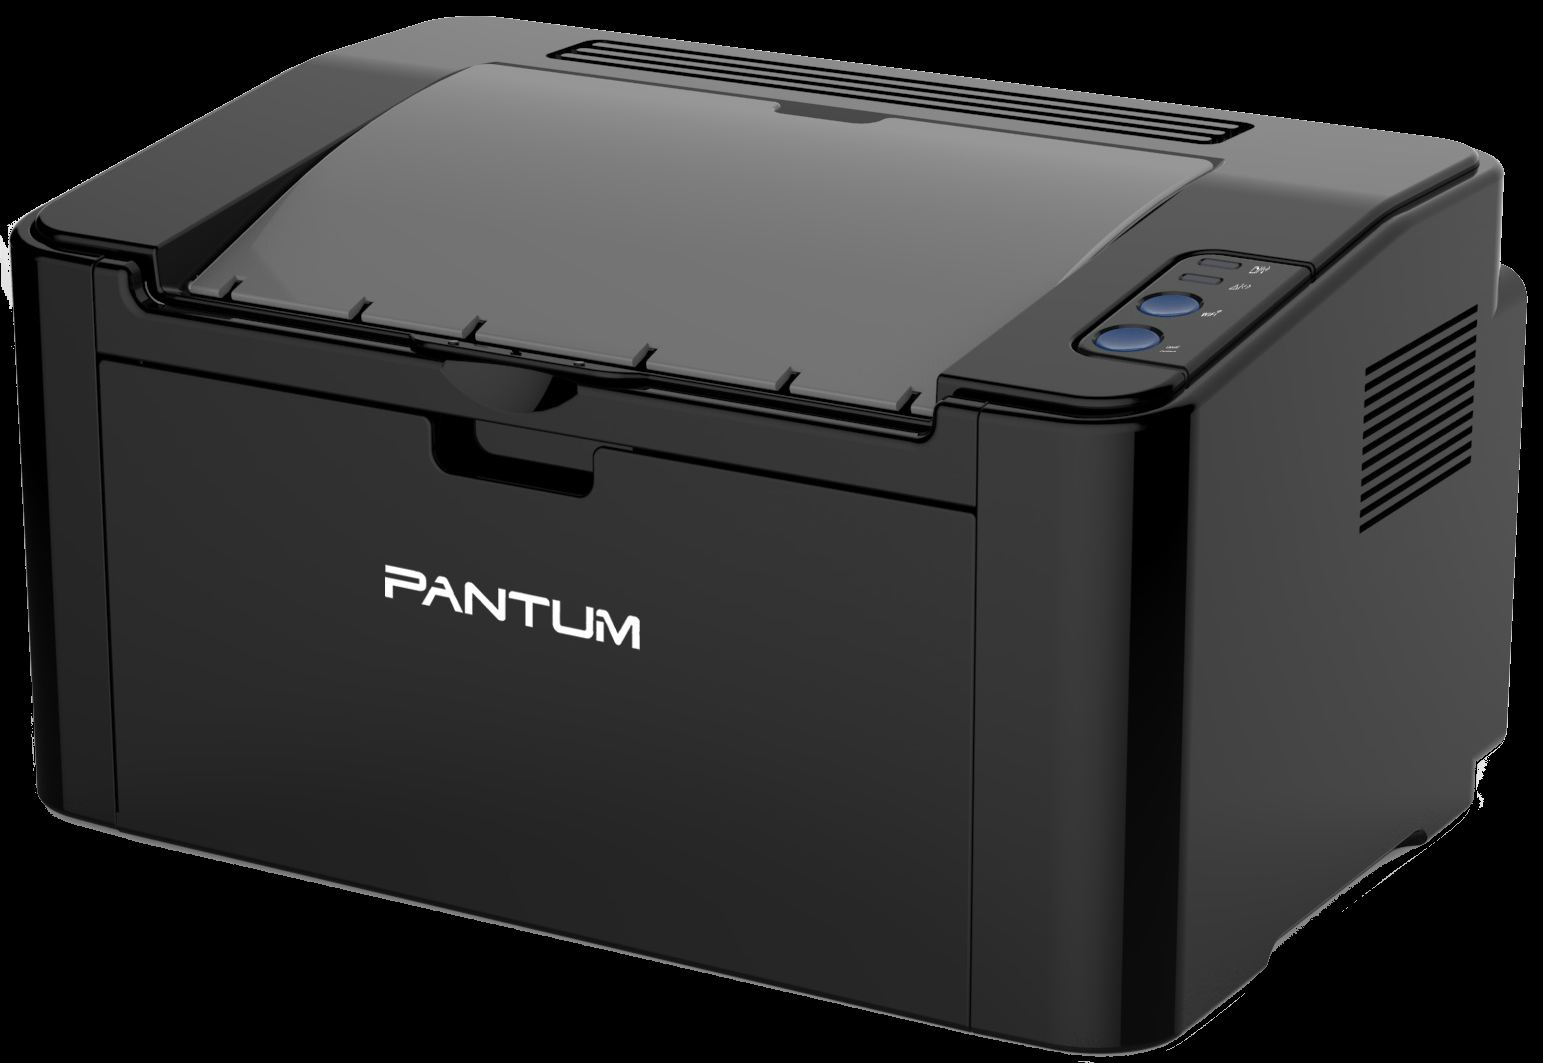 Купить принтер pantum p2500w. Pantum p2500w. Принтер Pantum 2500w. Принтер лазерный Pantum p2500. Лазерный монохромный принтер Pantum p2500w.